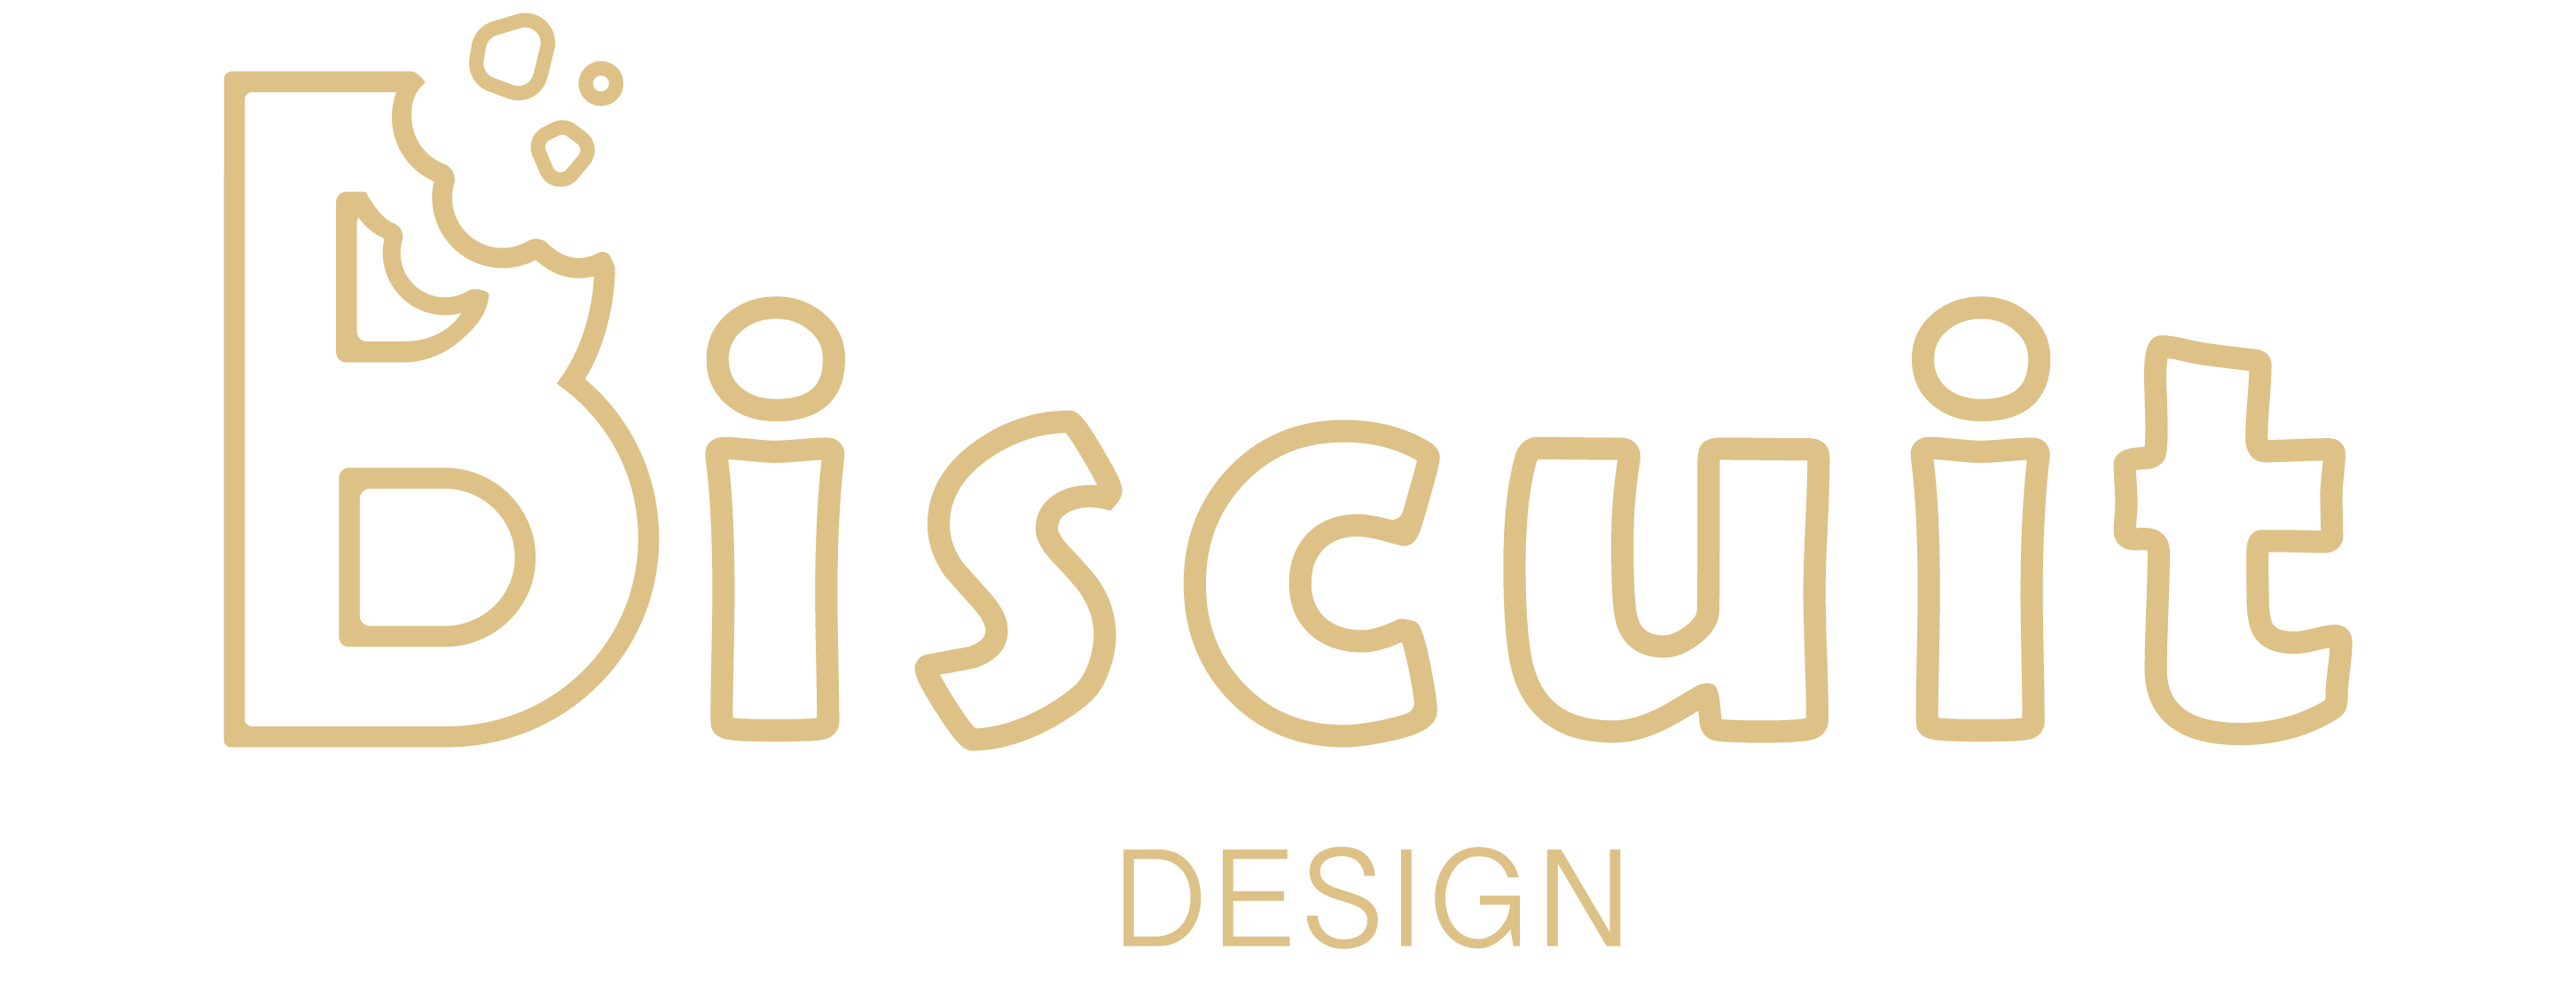 Biscuit Design